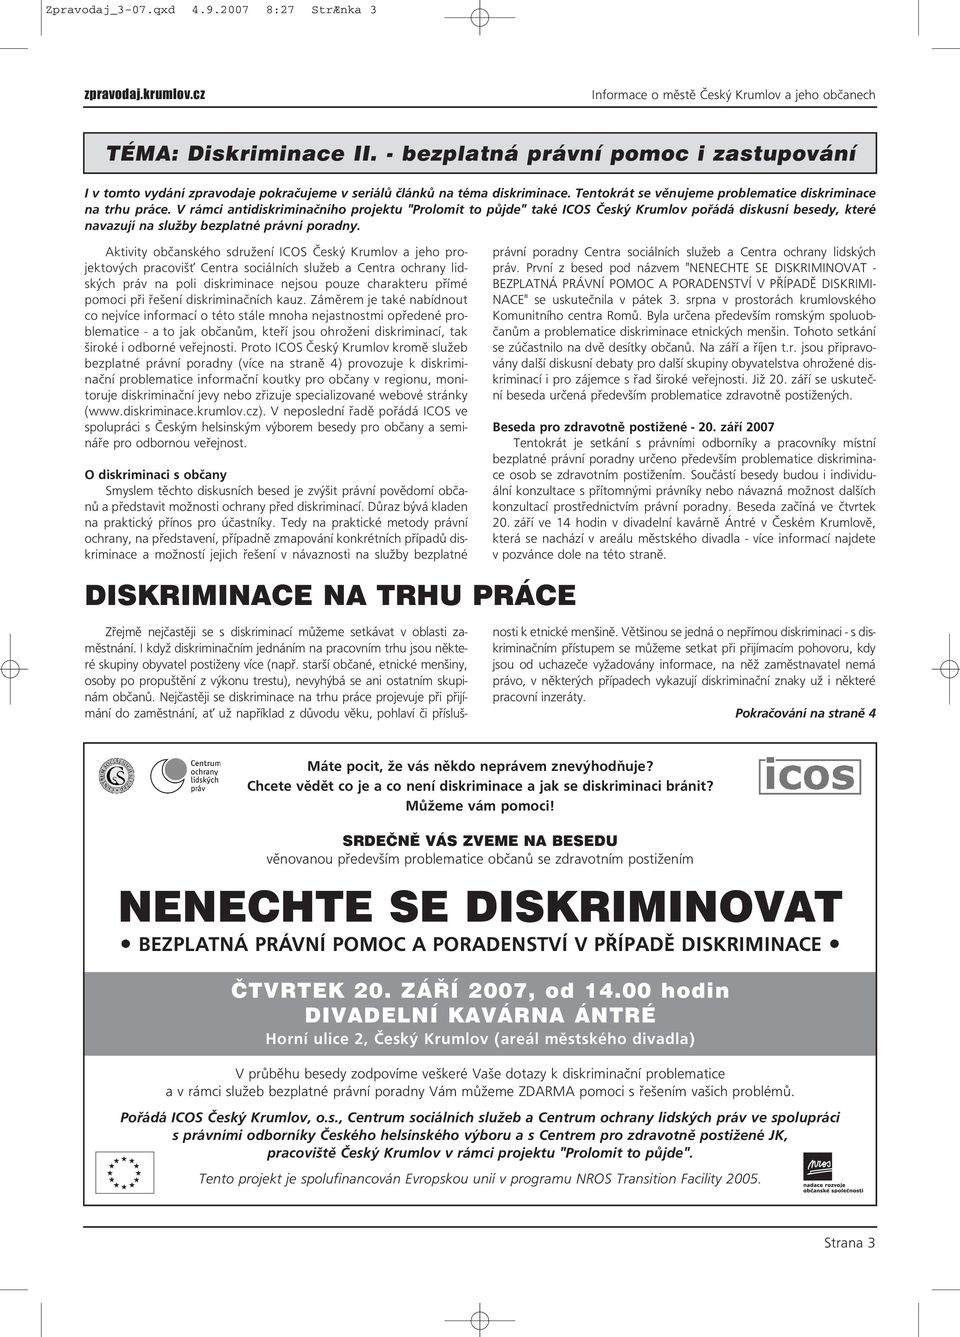 V rámci antidiskriminačního projektu "Prolomit to půjde" také ICOS Český Krumlov pořádá diskusní besedy, které navazují na služby bezplatné právní poradny.